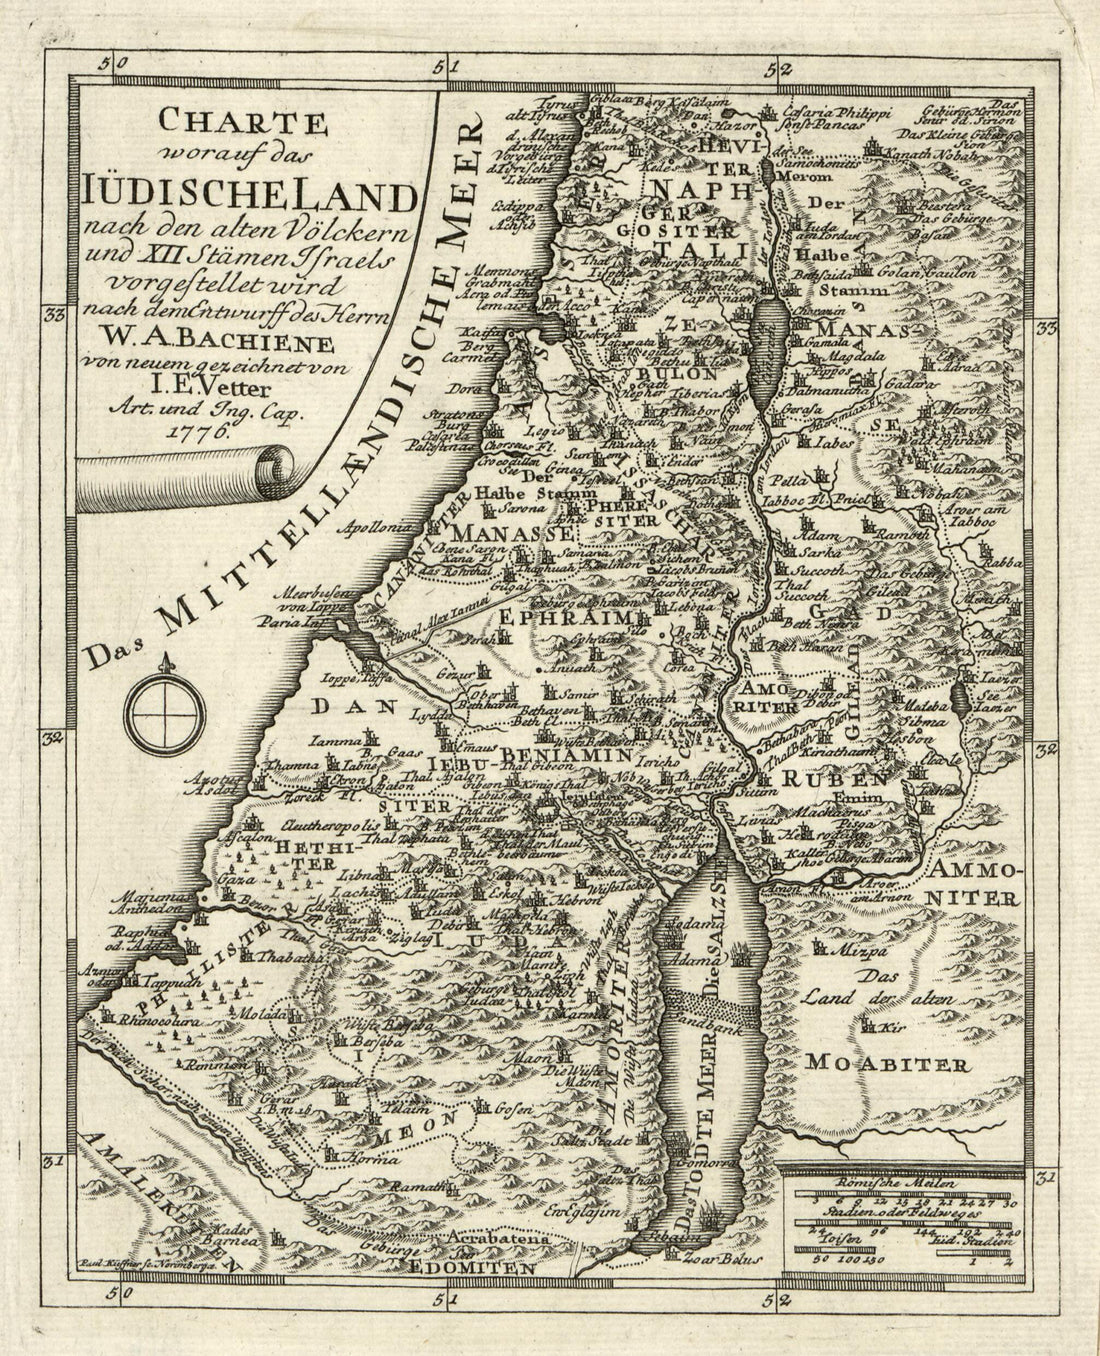 This old map of Charte Worauf Das Lüdischeland : Nach Den Alten Völckern Und XII Stämen Israels Vorgesstellet Wird Nach Dem Entwurff Des Herrn W.A. Bachiene from 1776 was created by I. E. Vetter in 1776